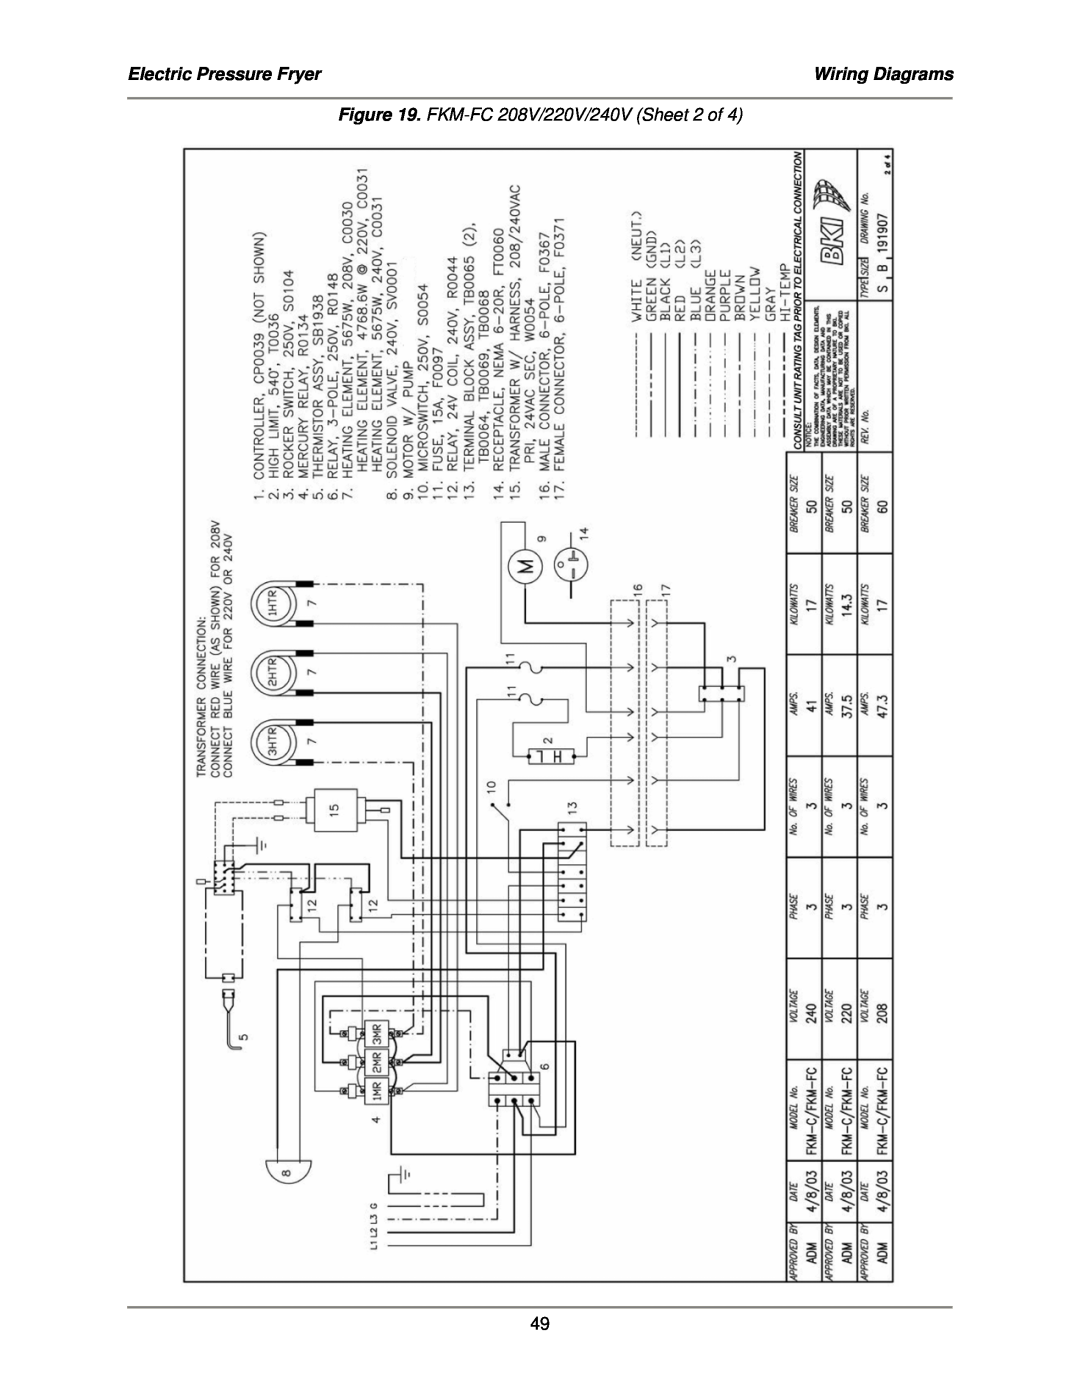 Bakers Pride Oven service manual Electric Pressure Fryer, Wiring Diagrams, FKM-FC208V/220V/240V Sheet 2 of 